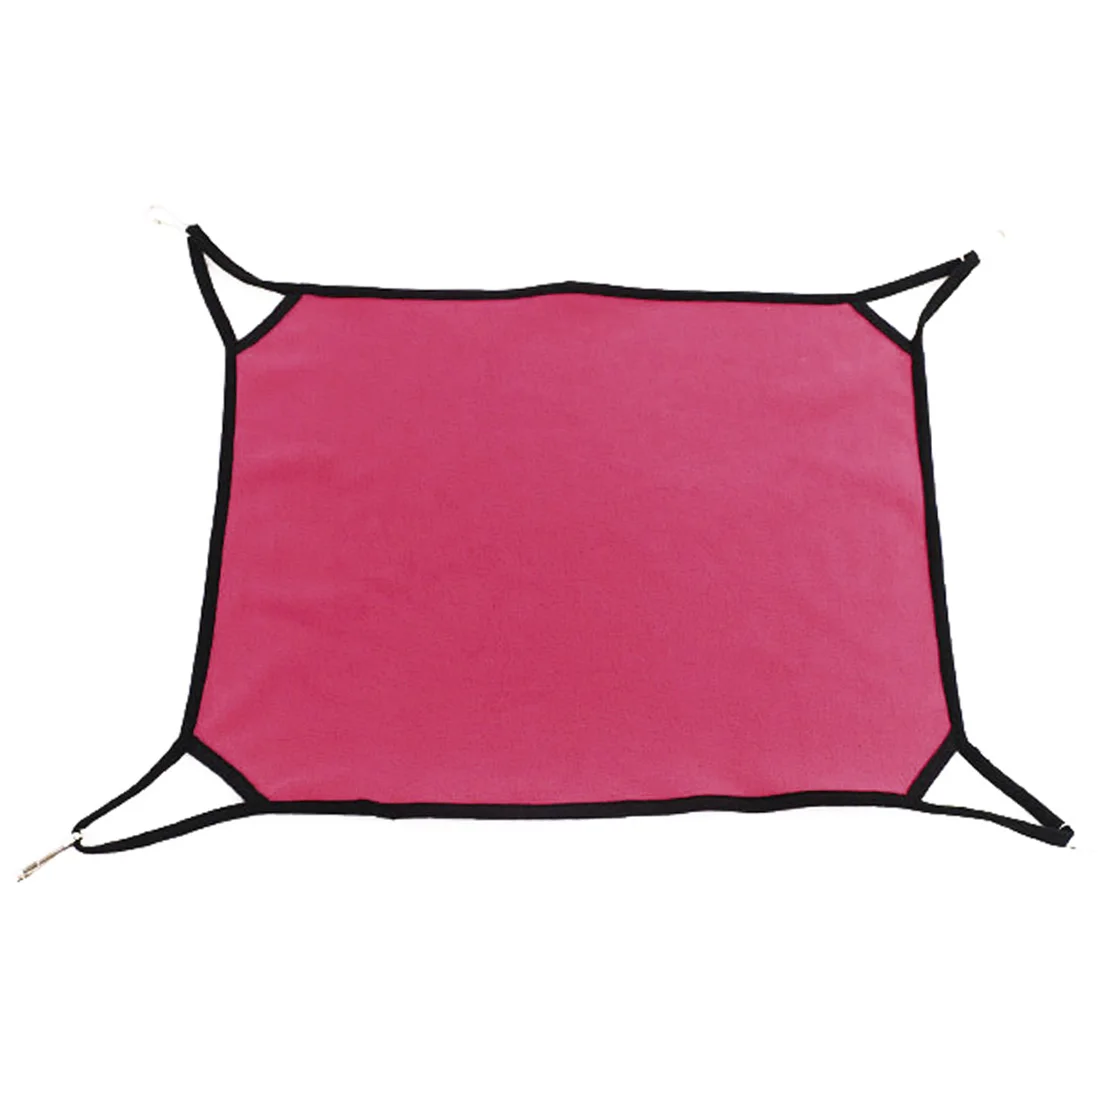 4 цвета домик для кошек прекрасный флисовый подвесной коврик для кошки мягкий гамак для кошки для питомца котенок кровать клетка Чехол Подушка - Цвет: rose red